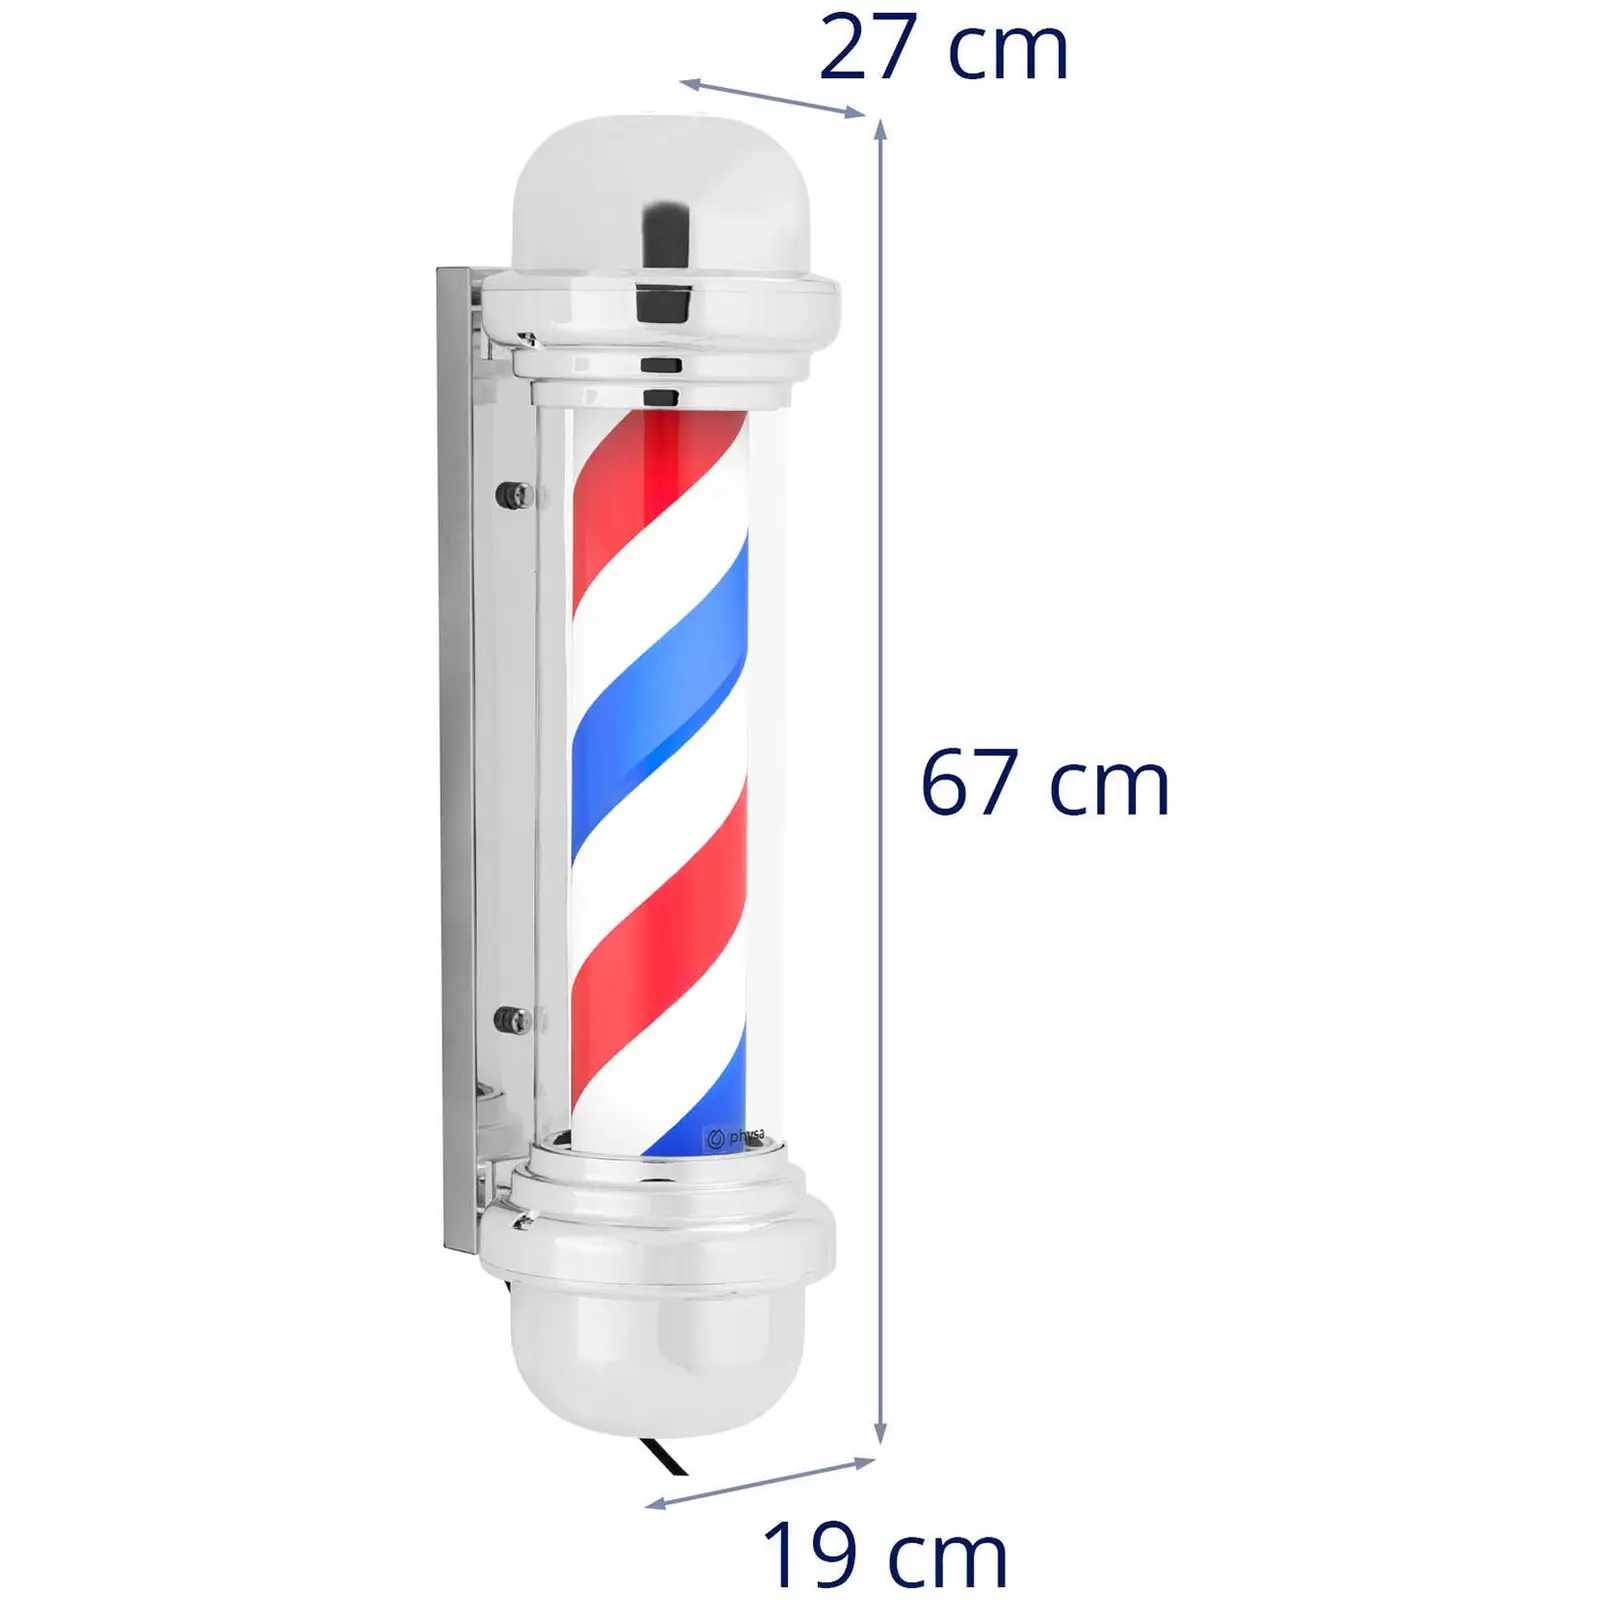 Barber pole - Roterande och upplyst - 380 mm höjd - 25 cm väggavstånd - Silverram